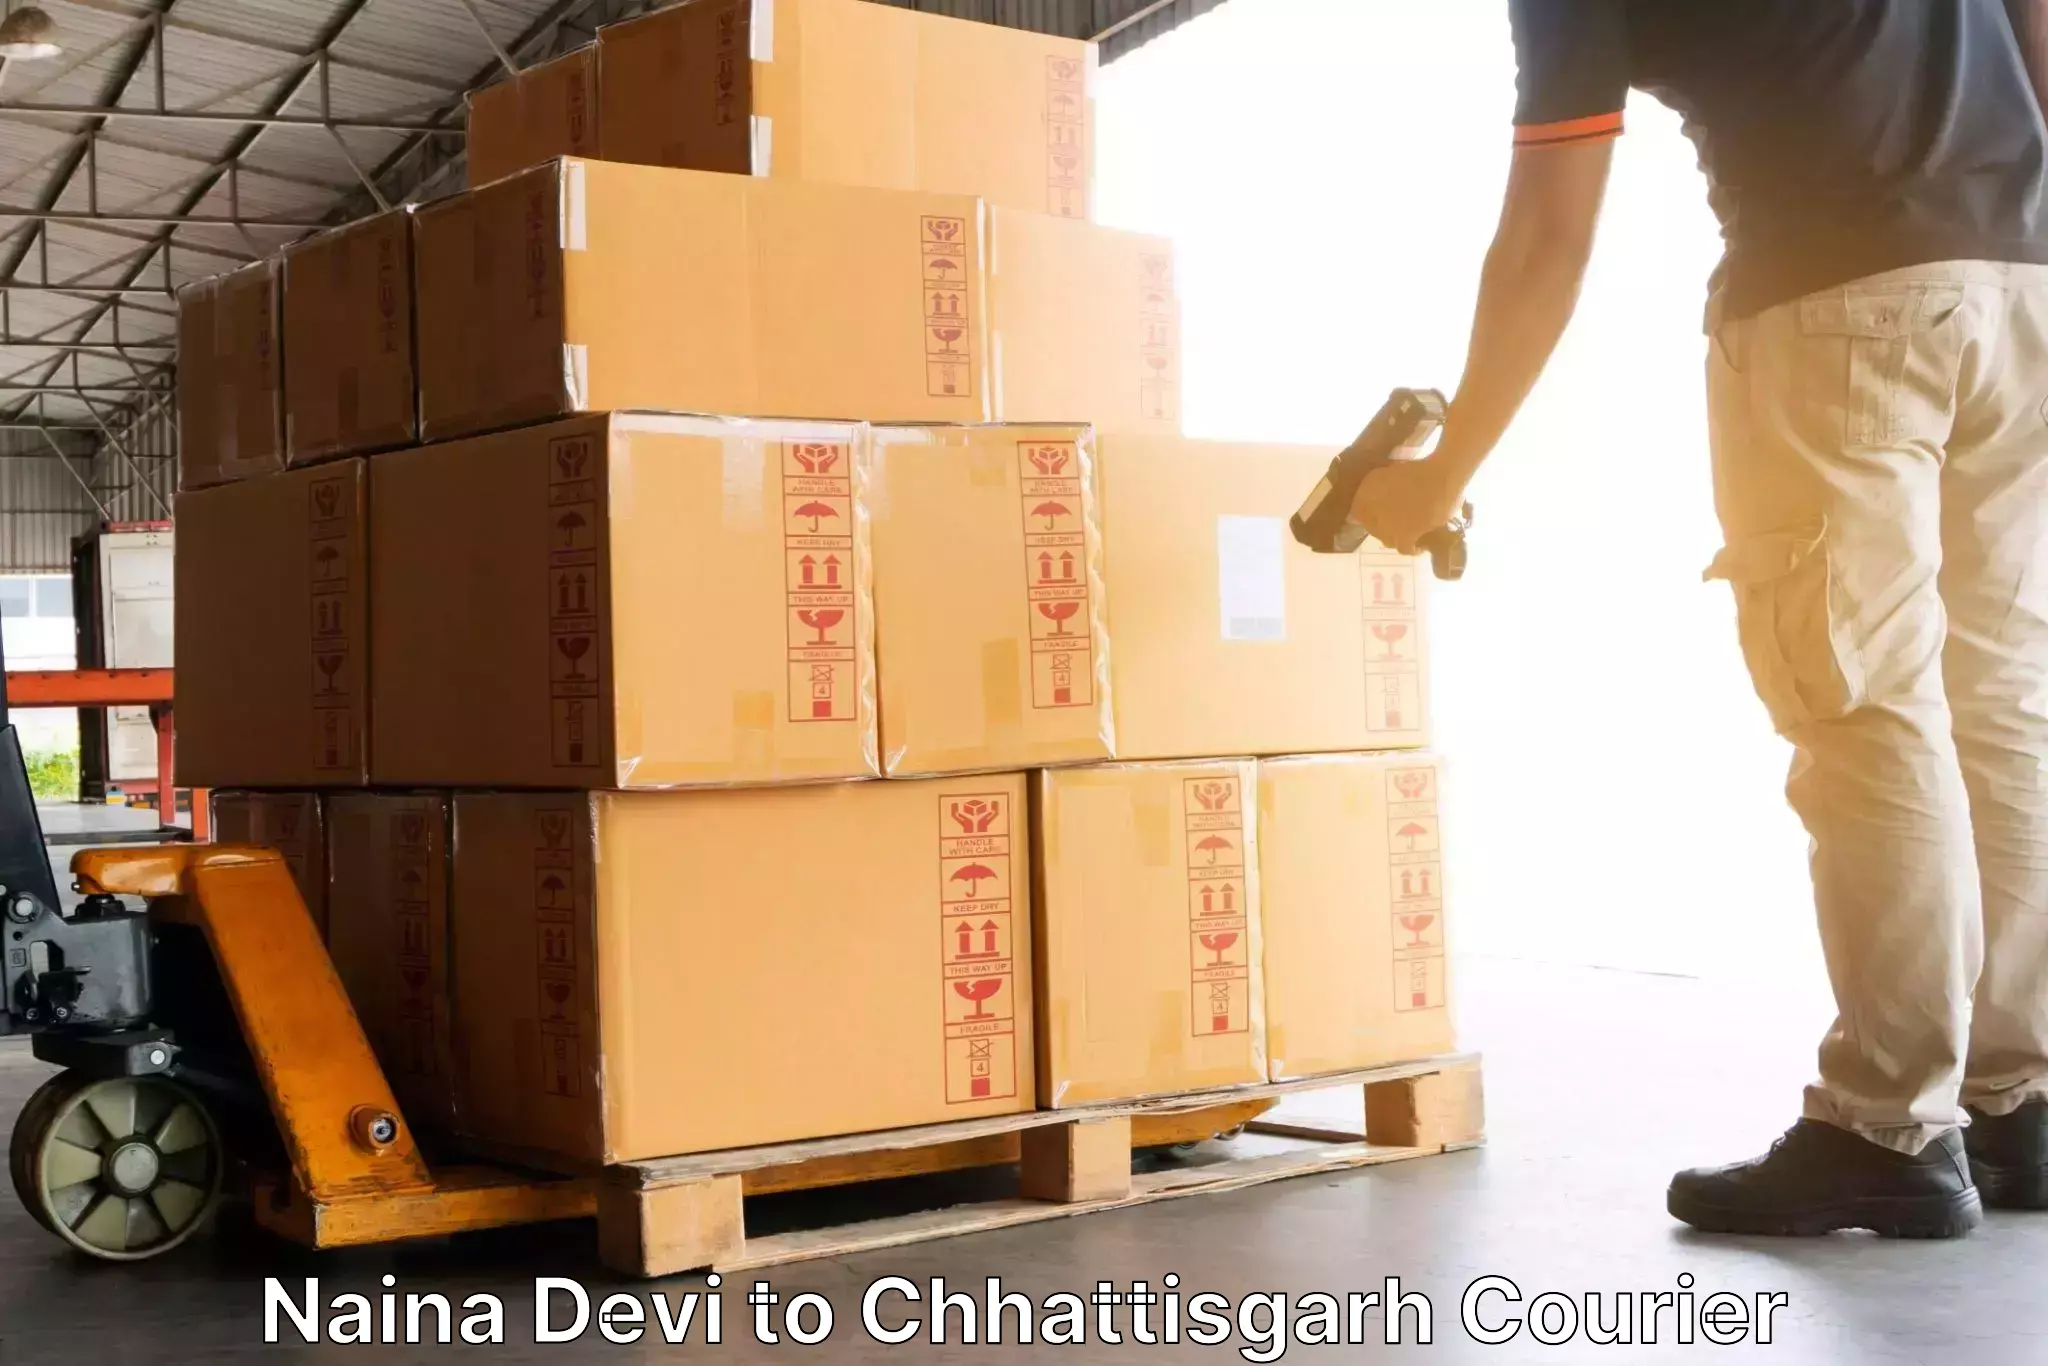 Logistics service provider Naina Devi to Bhatapara